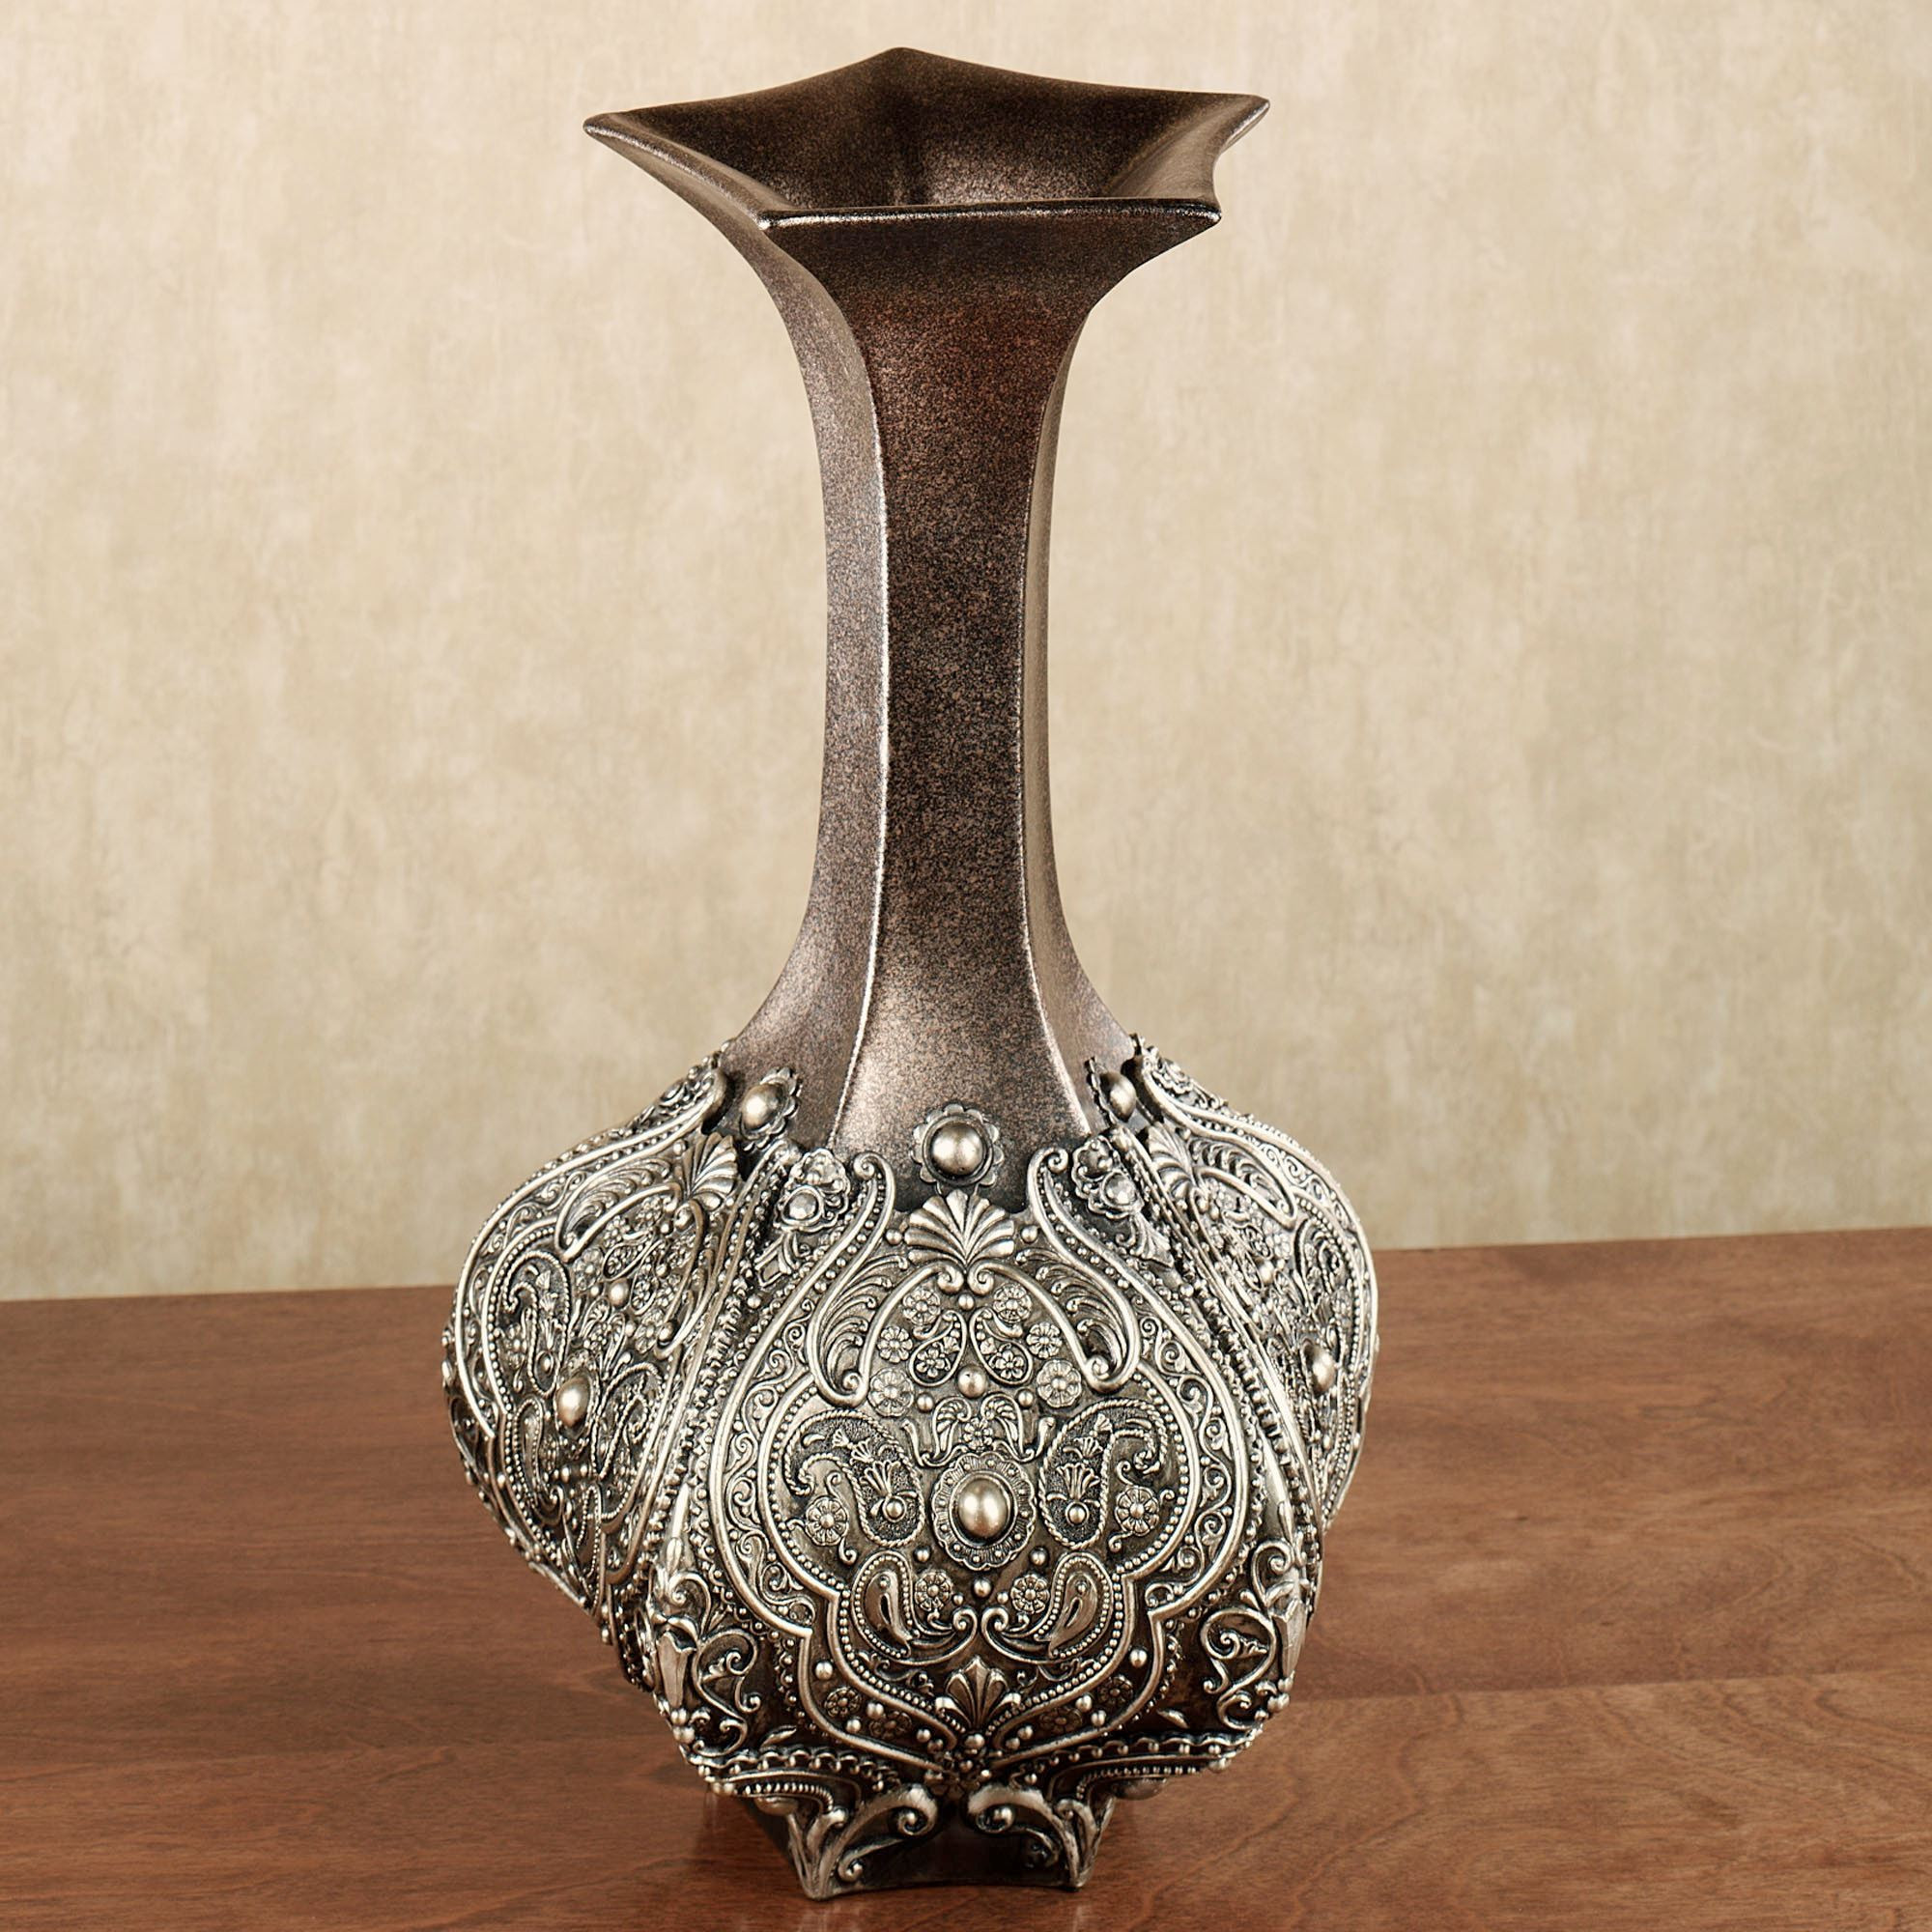 15 Wonderful Royal Satsuma Vase 2024 free download royal satsuma vase of decorative table vases vase and cellar image avorcor com within karachi decorative table vase